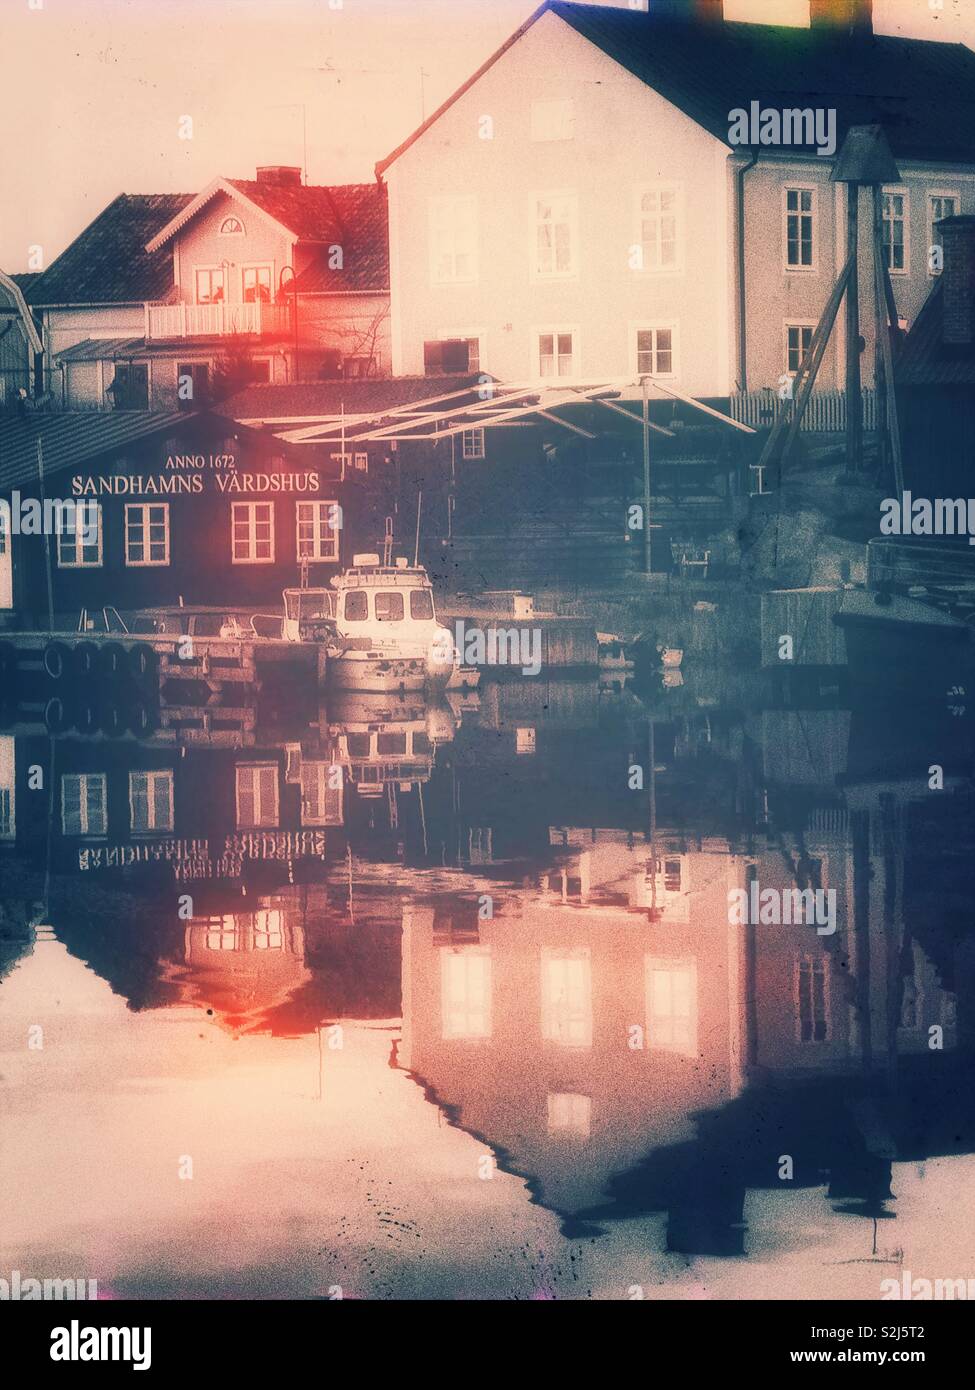 Sandhamn harbour tombée de la réflexion, de l'archipel de Stockholm, Suède, Scandinavie. Île de l'archipel extérieur populaire pour la voile et le yachting depuis le 19e siècle Banque D'Images